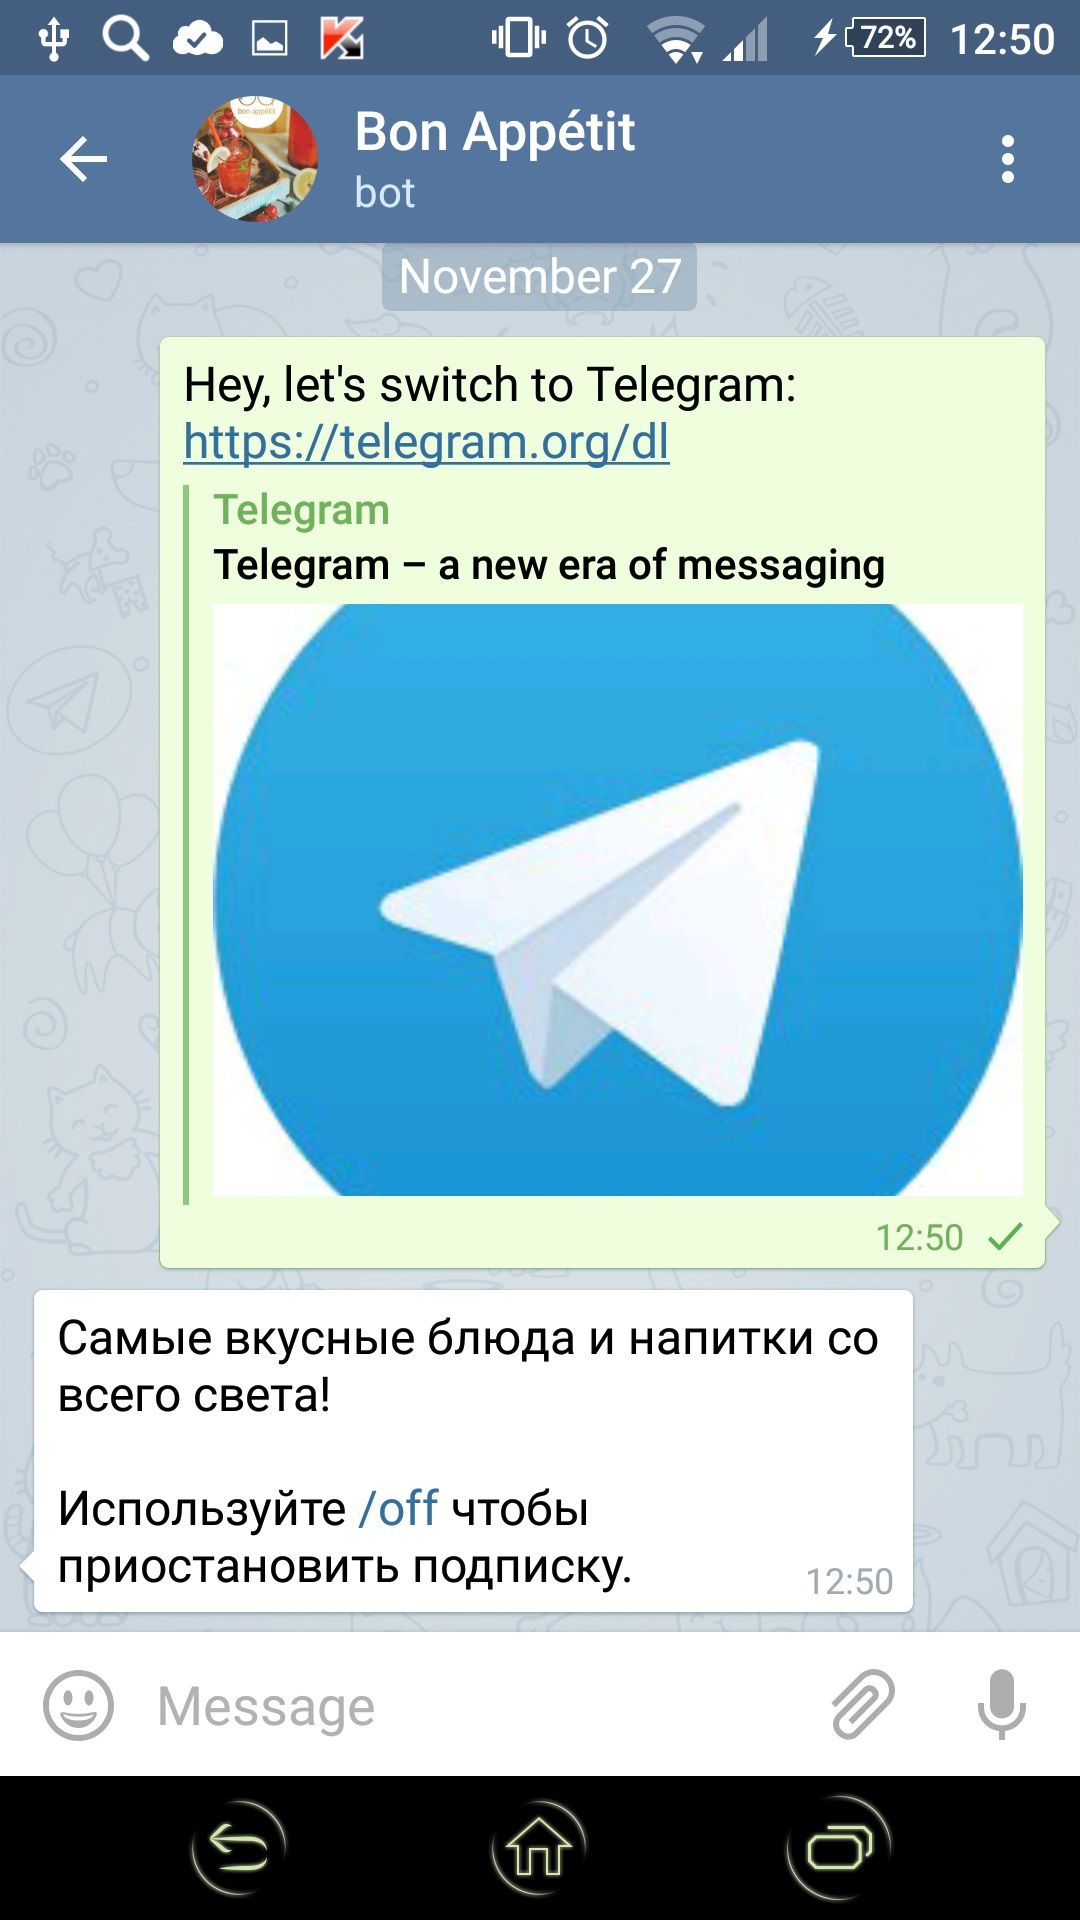 Скачать приложение телеграмм на русском языке на андроид бесплатно и установить без рекламы фото 50